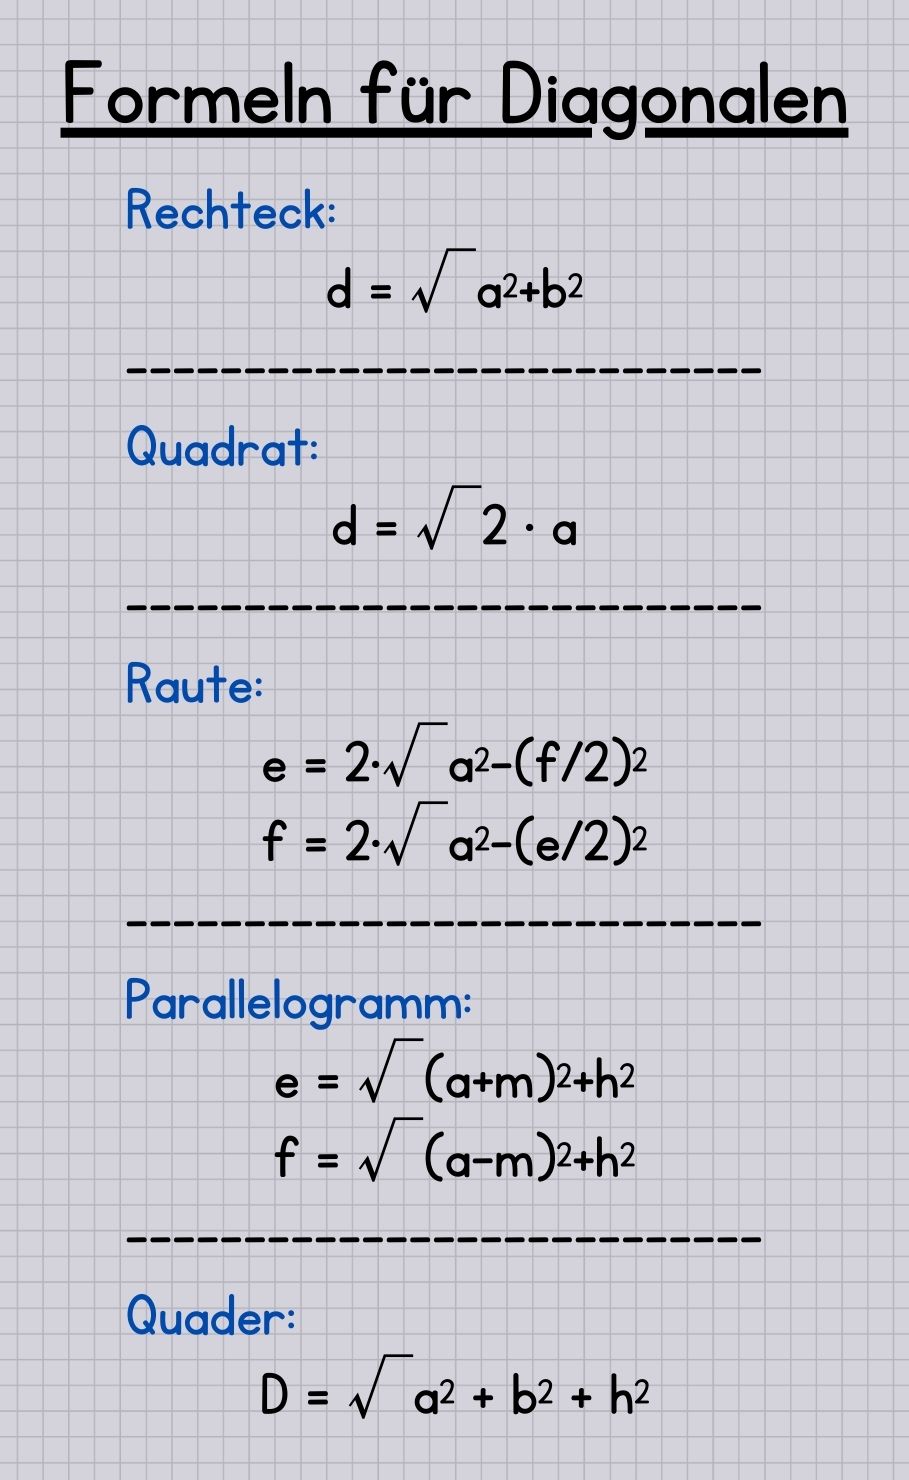 Formeln für die Diagonalen der verschiedenen Körper